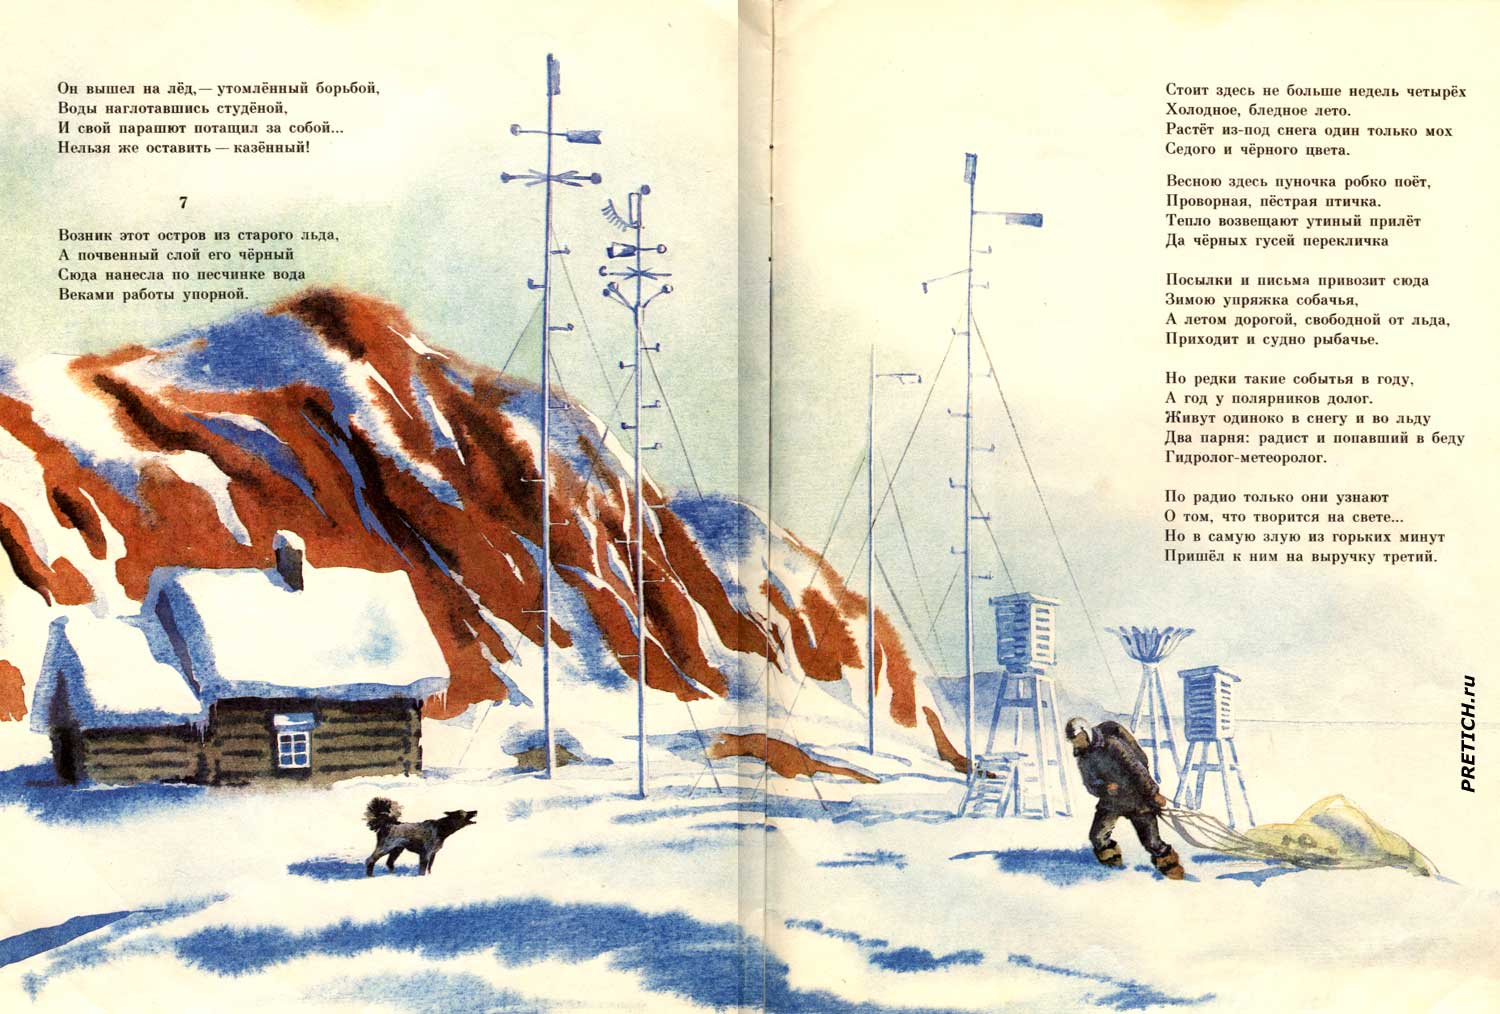 Ледяной остров Иллюстрации в книжке Маршака